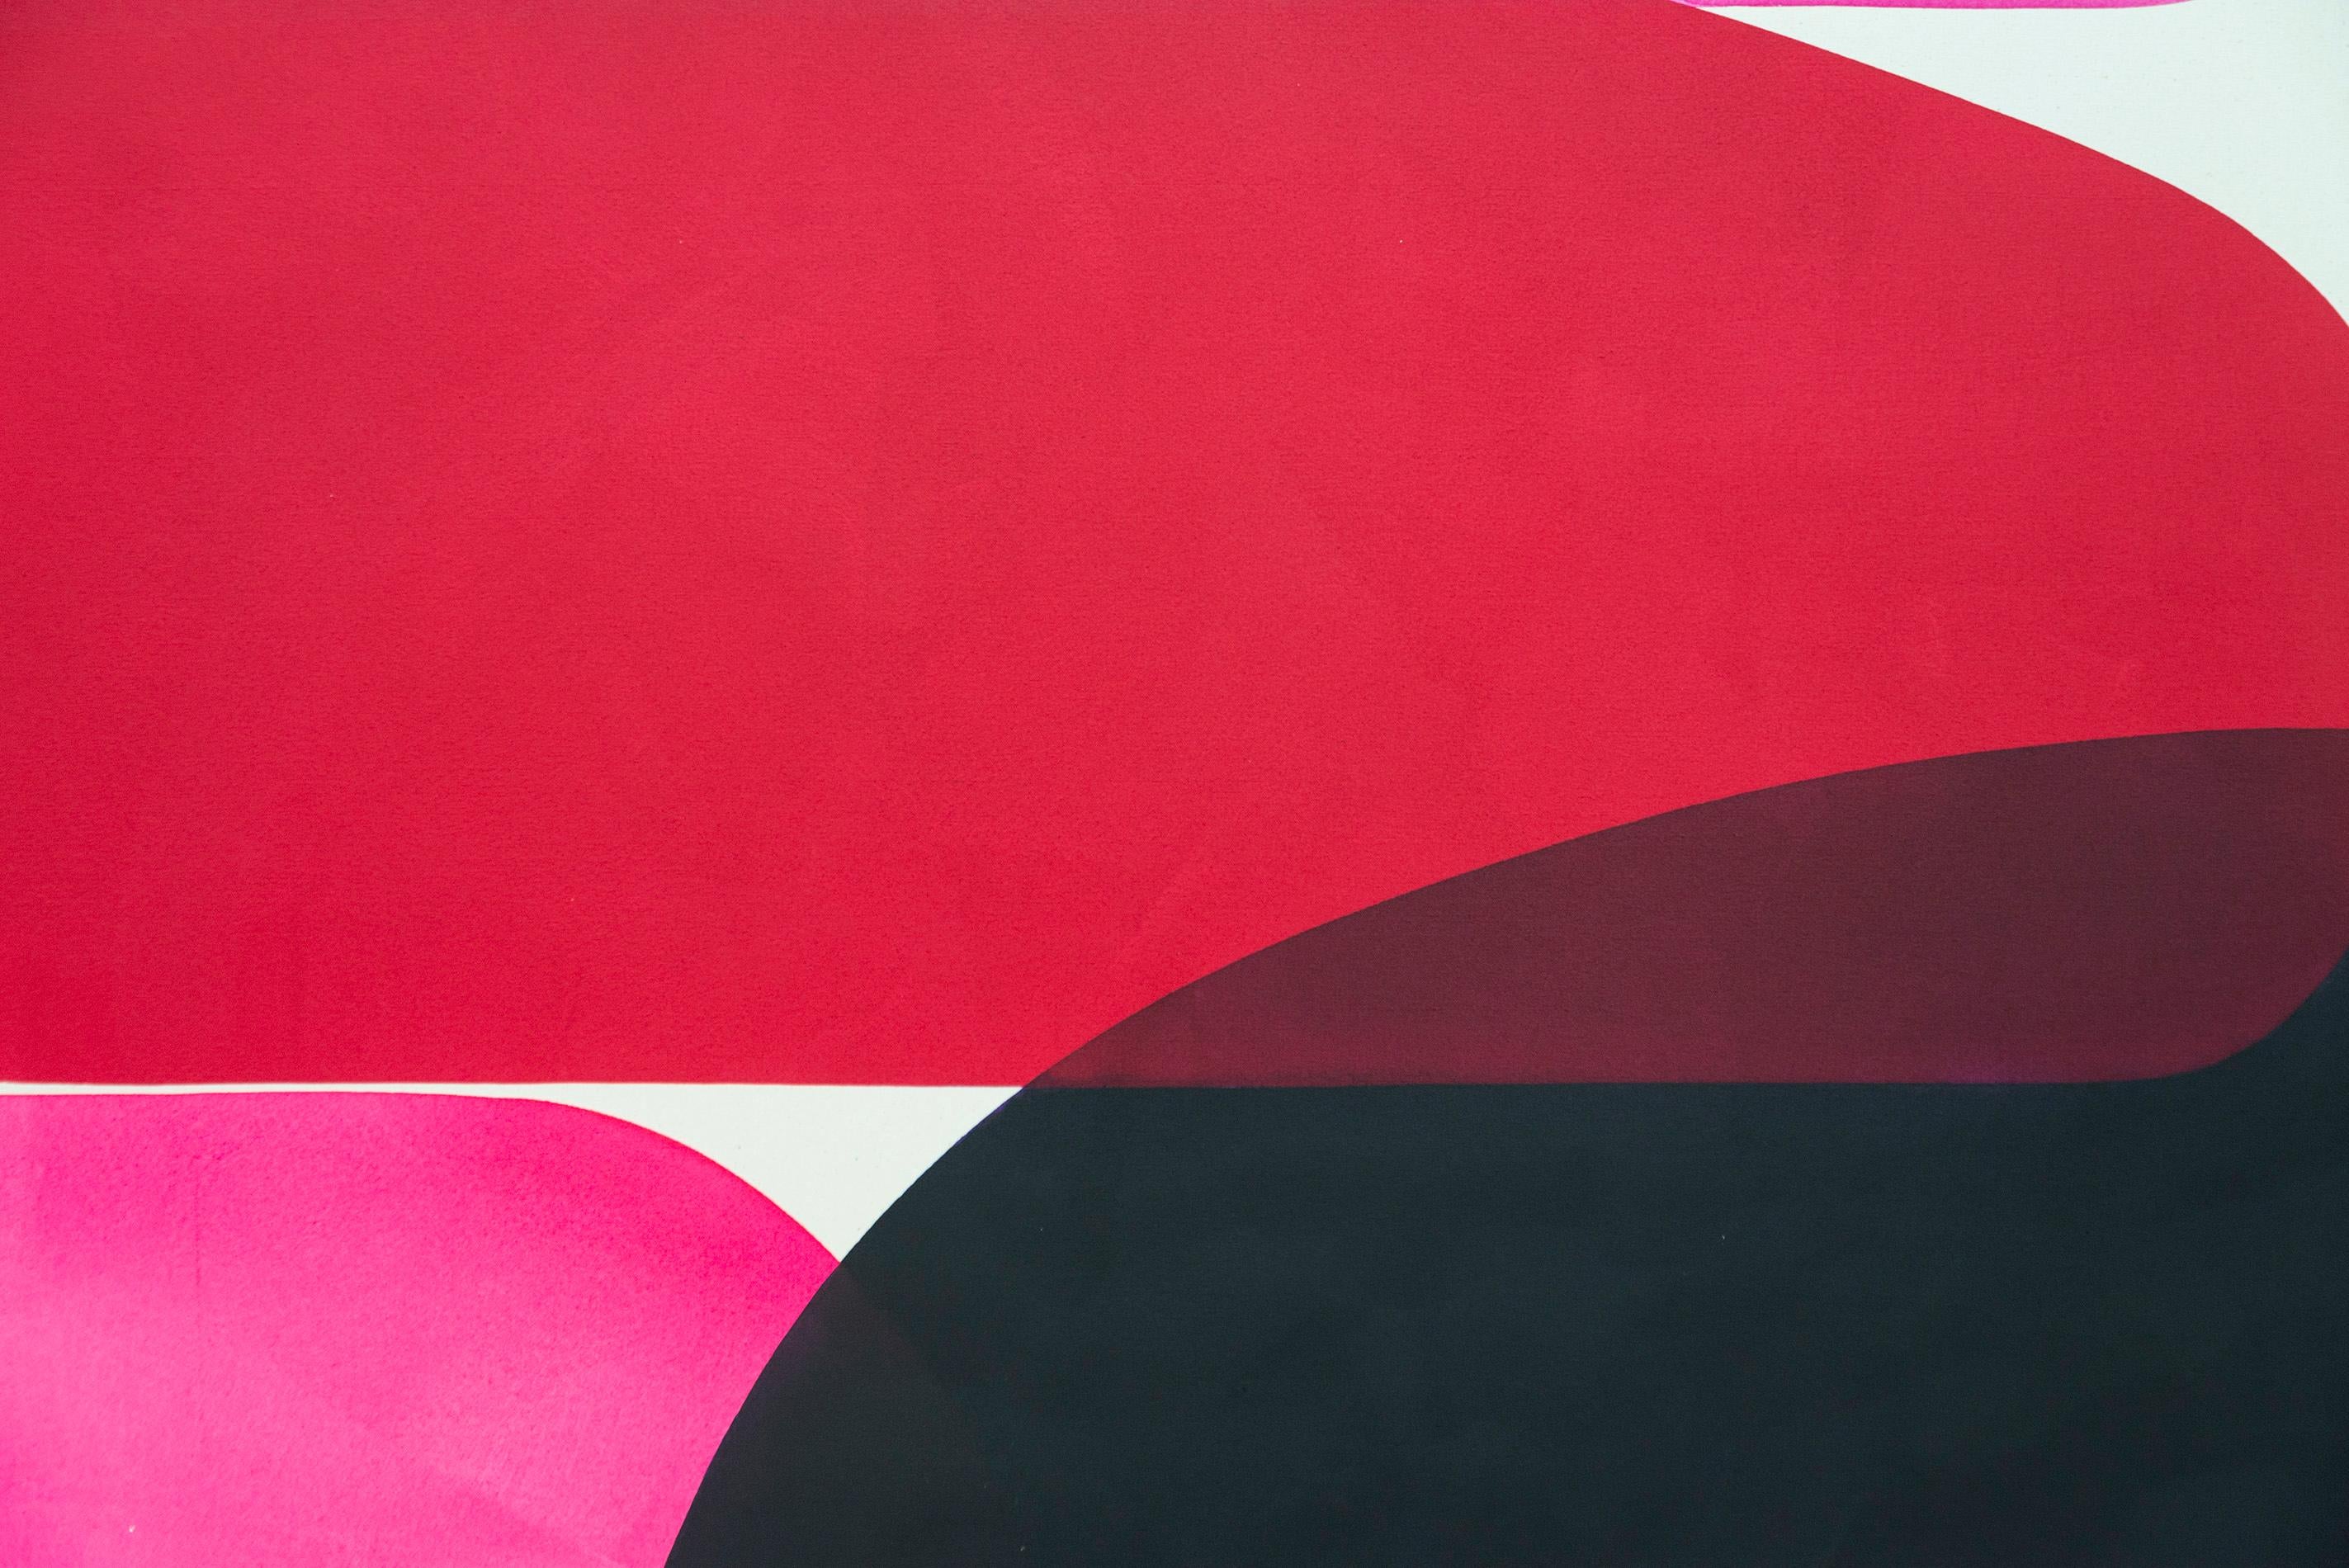 Les compositions graphiques dynamiques d'Aron Hill ont été inspirées par le travail des modernistes canadiens tardifs comme Jack Bush. Les formes minimalistes et les couleurs audacieuses continuent de caractériser leur nouveau travail. Dans cette